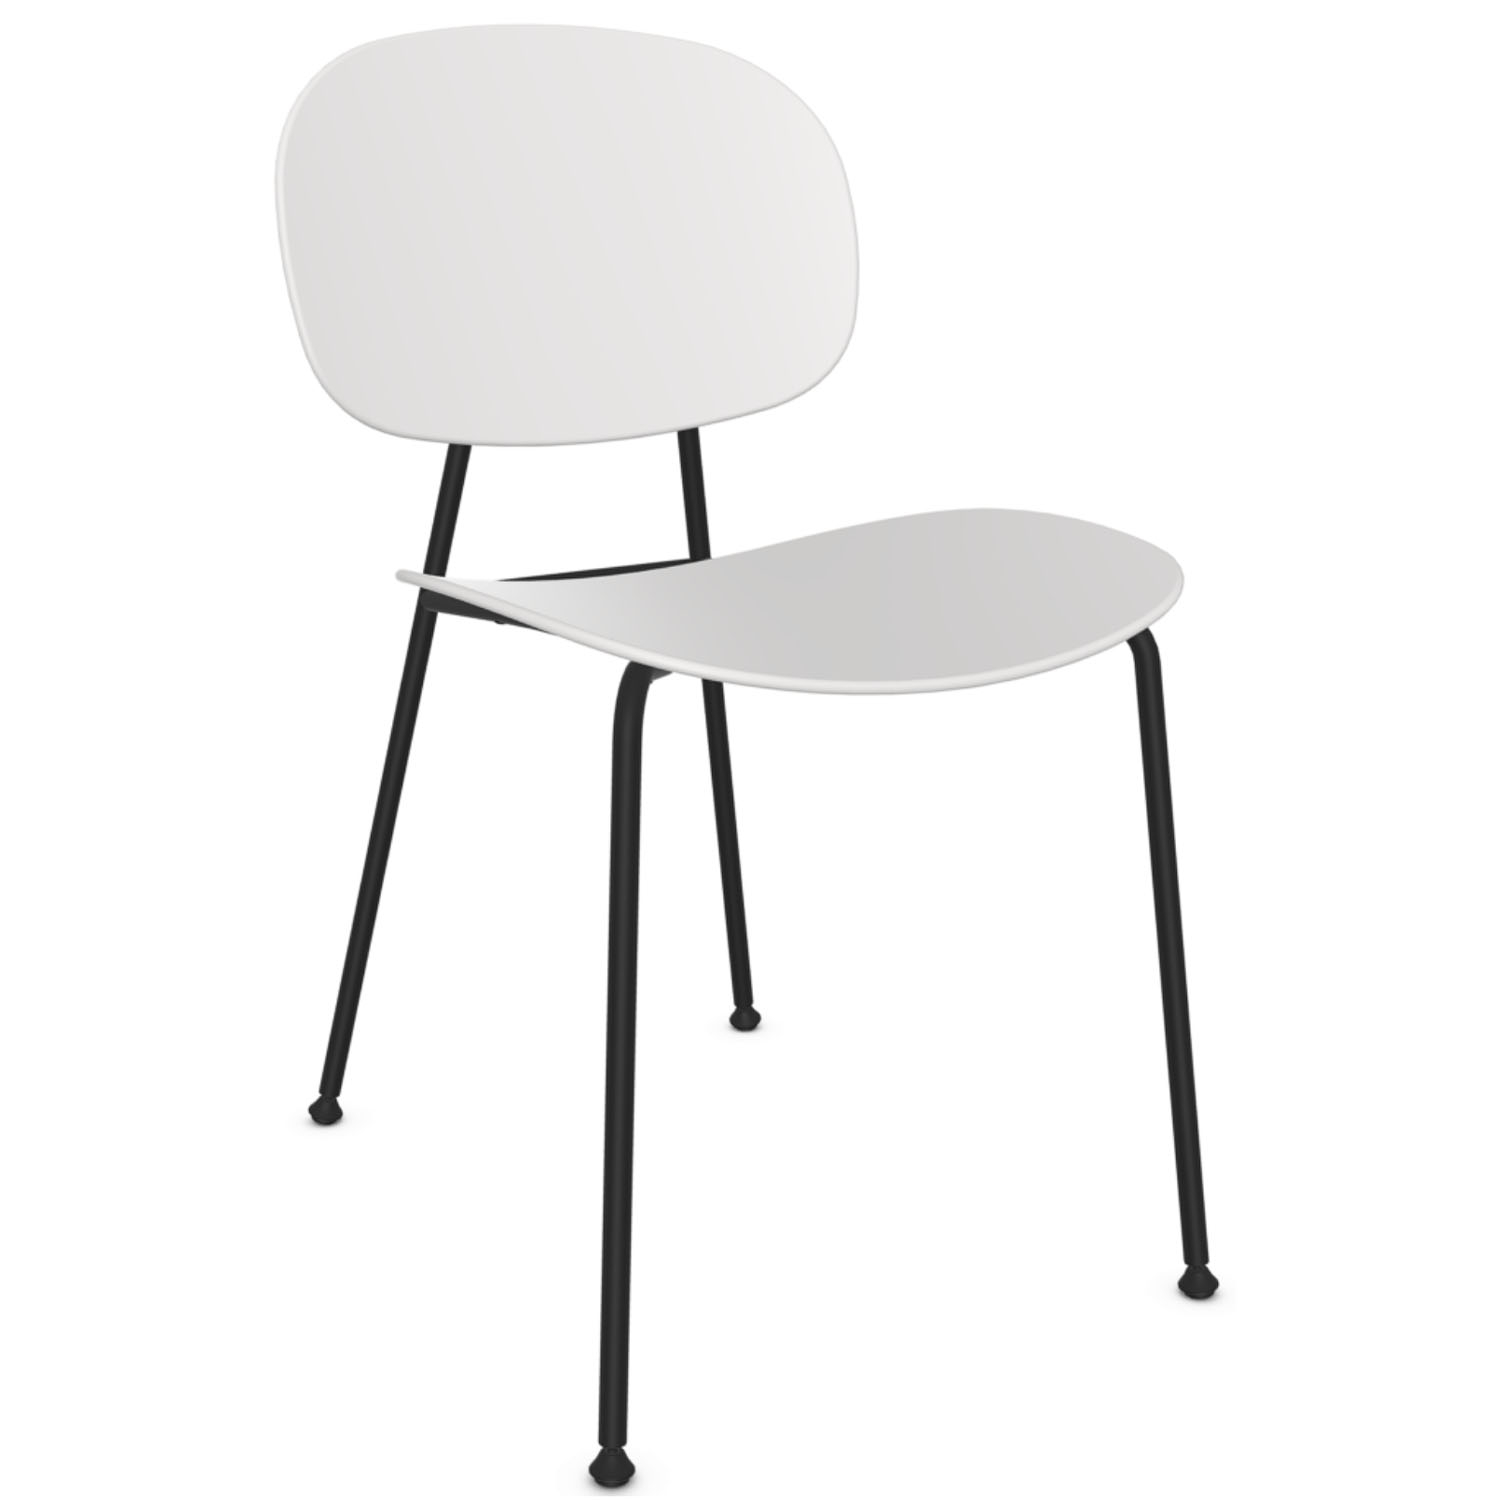 Infiniti designové židle Tondina Chair